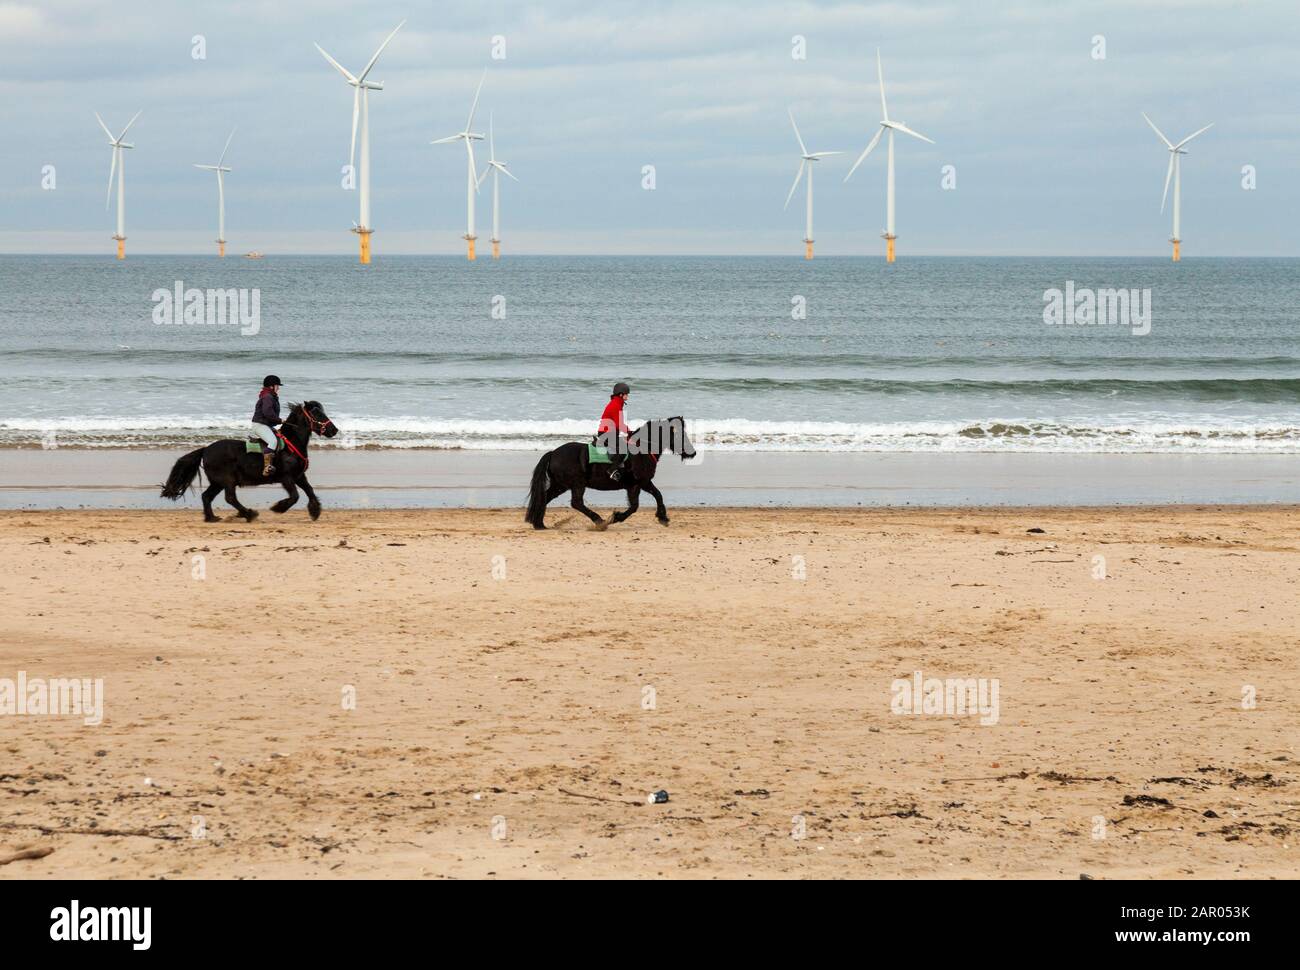 Zwei Frauen, die Pferde am Redcar Strand mit den Windenergieanlagen im Hintergrund im Nordosten Englands, Großbritannien, reiten Stockfoto